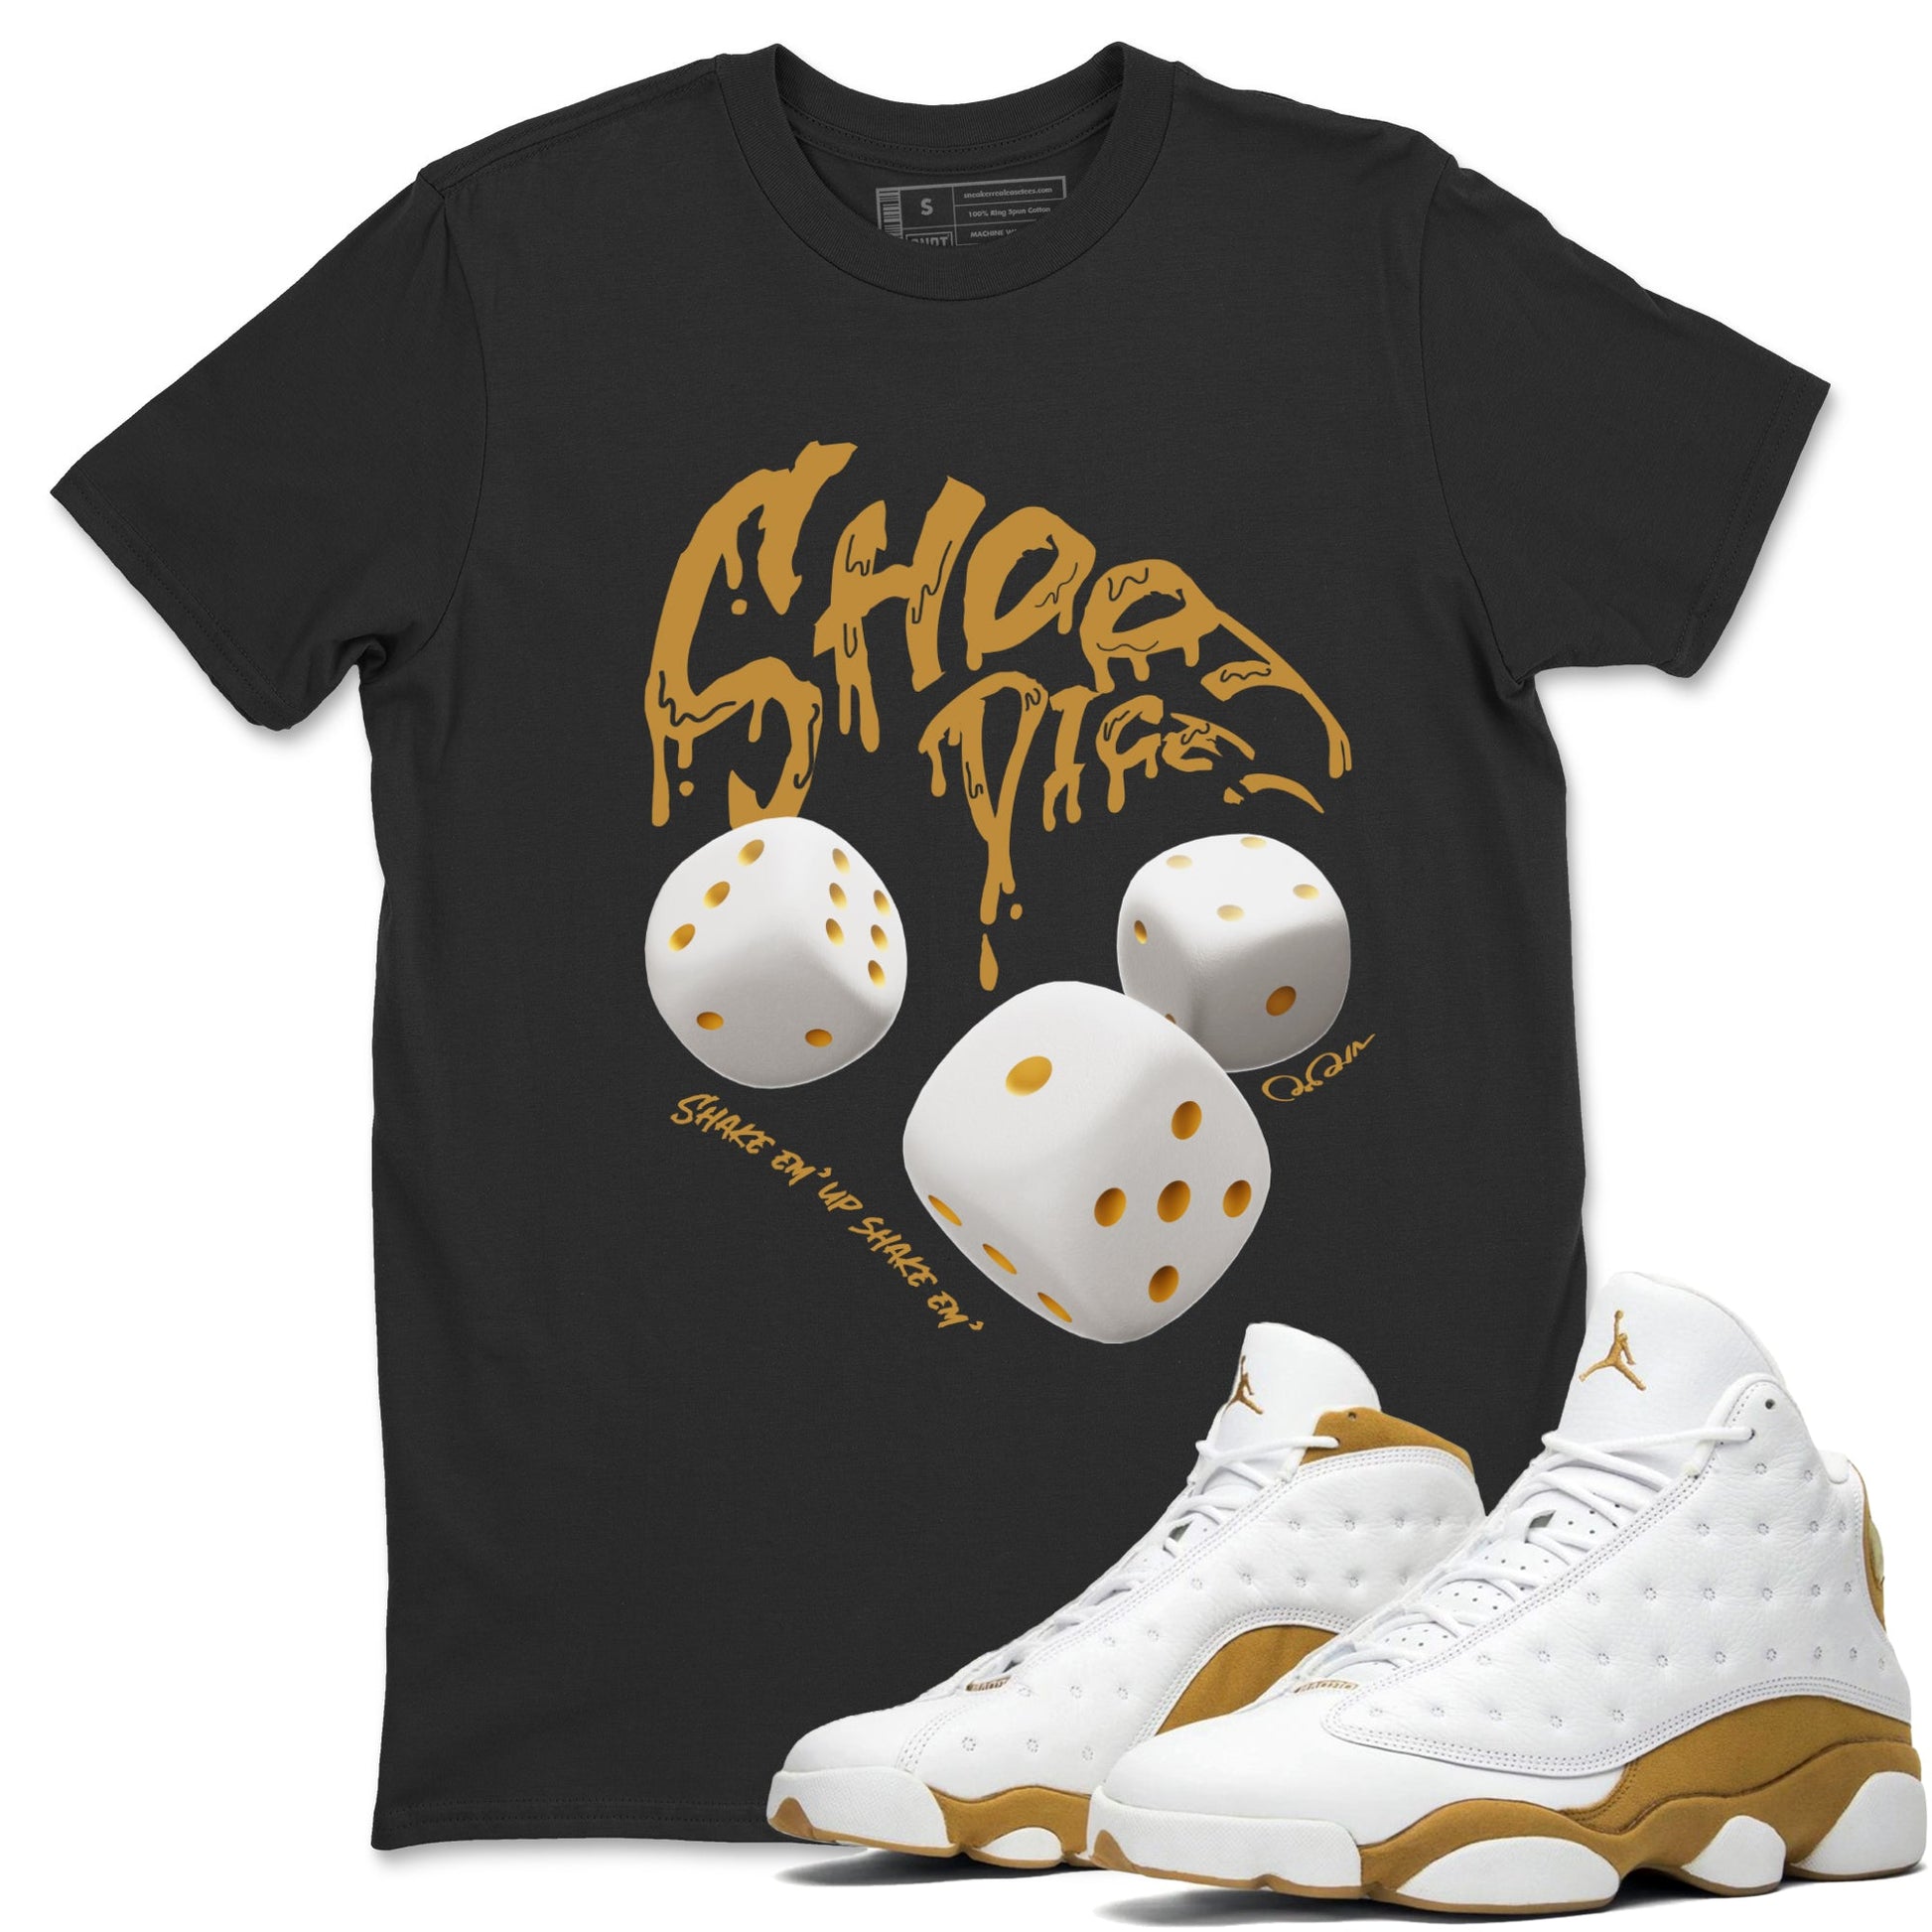 Air Jordan 13 Wheat Sneaker Match Tees Shoot Dice Sneaker Tees AJ13 Wheat Sneaker Release Tees Unisex Shirts Black 1